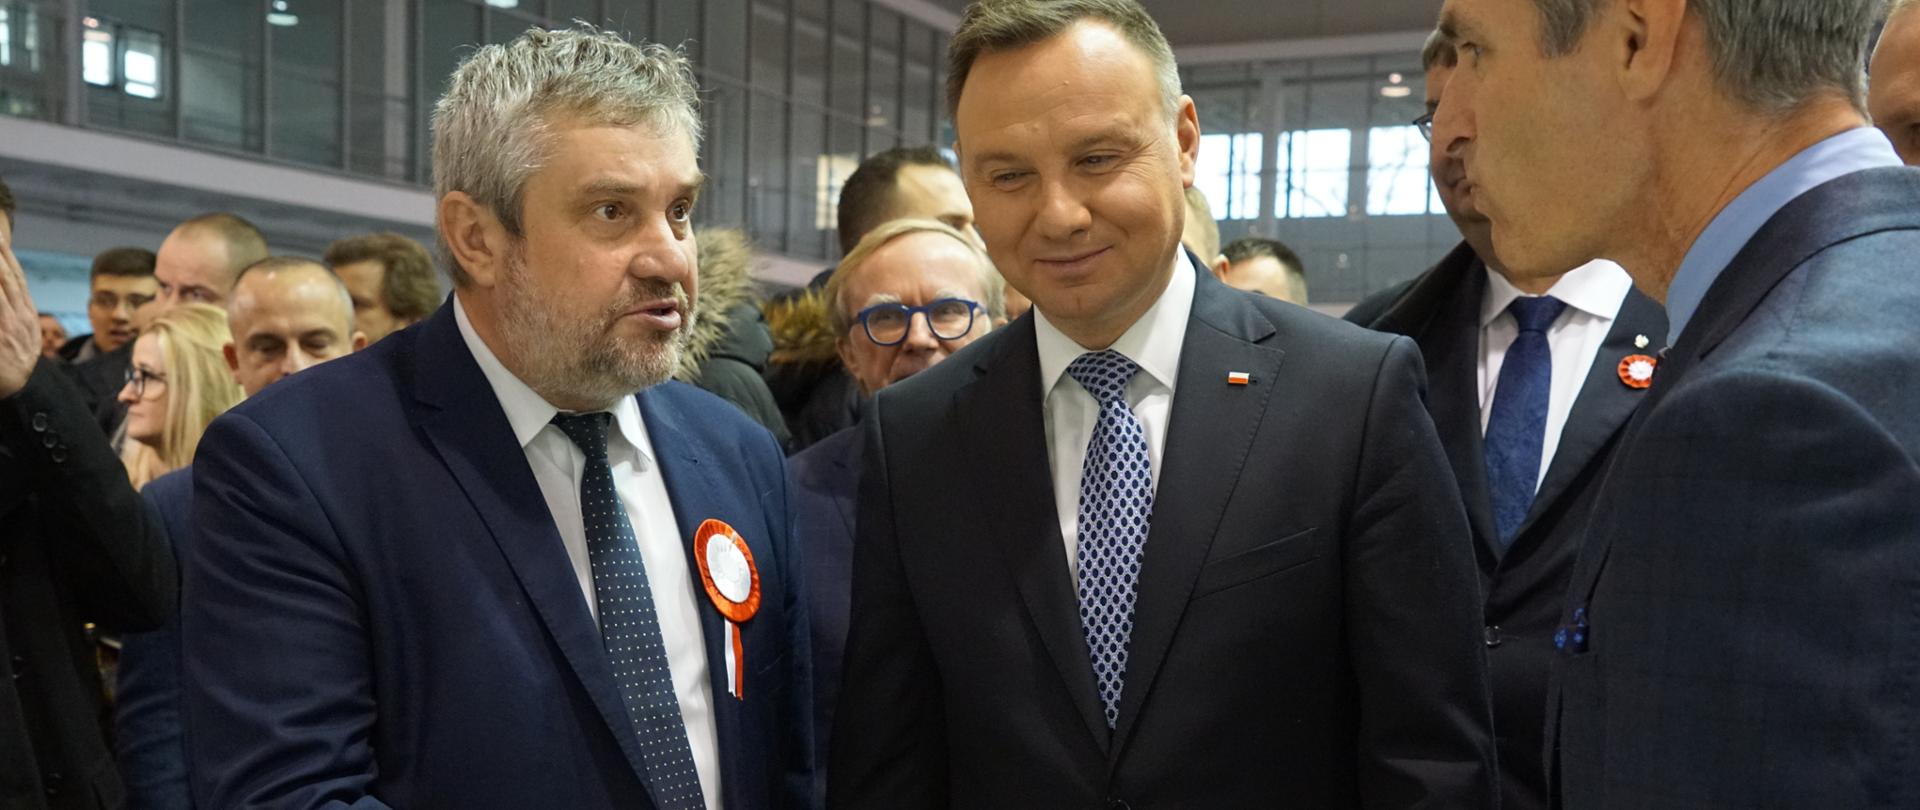 Prezydent A. Duda i minister J.K. Ardanowski zwiedzają ekspozycje